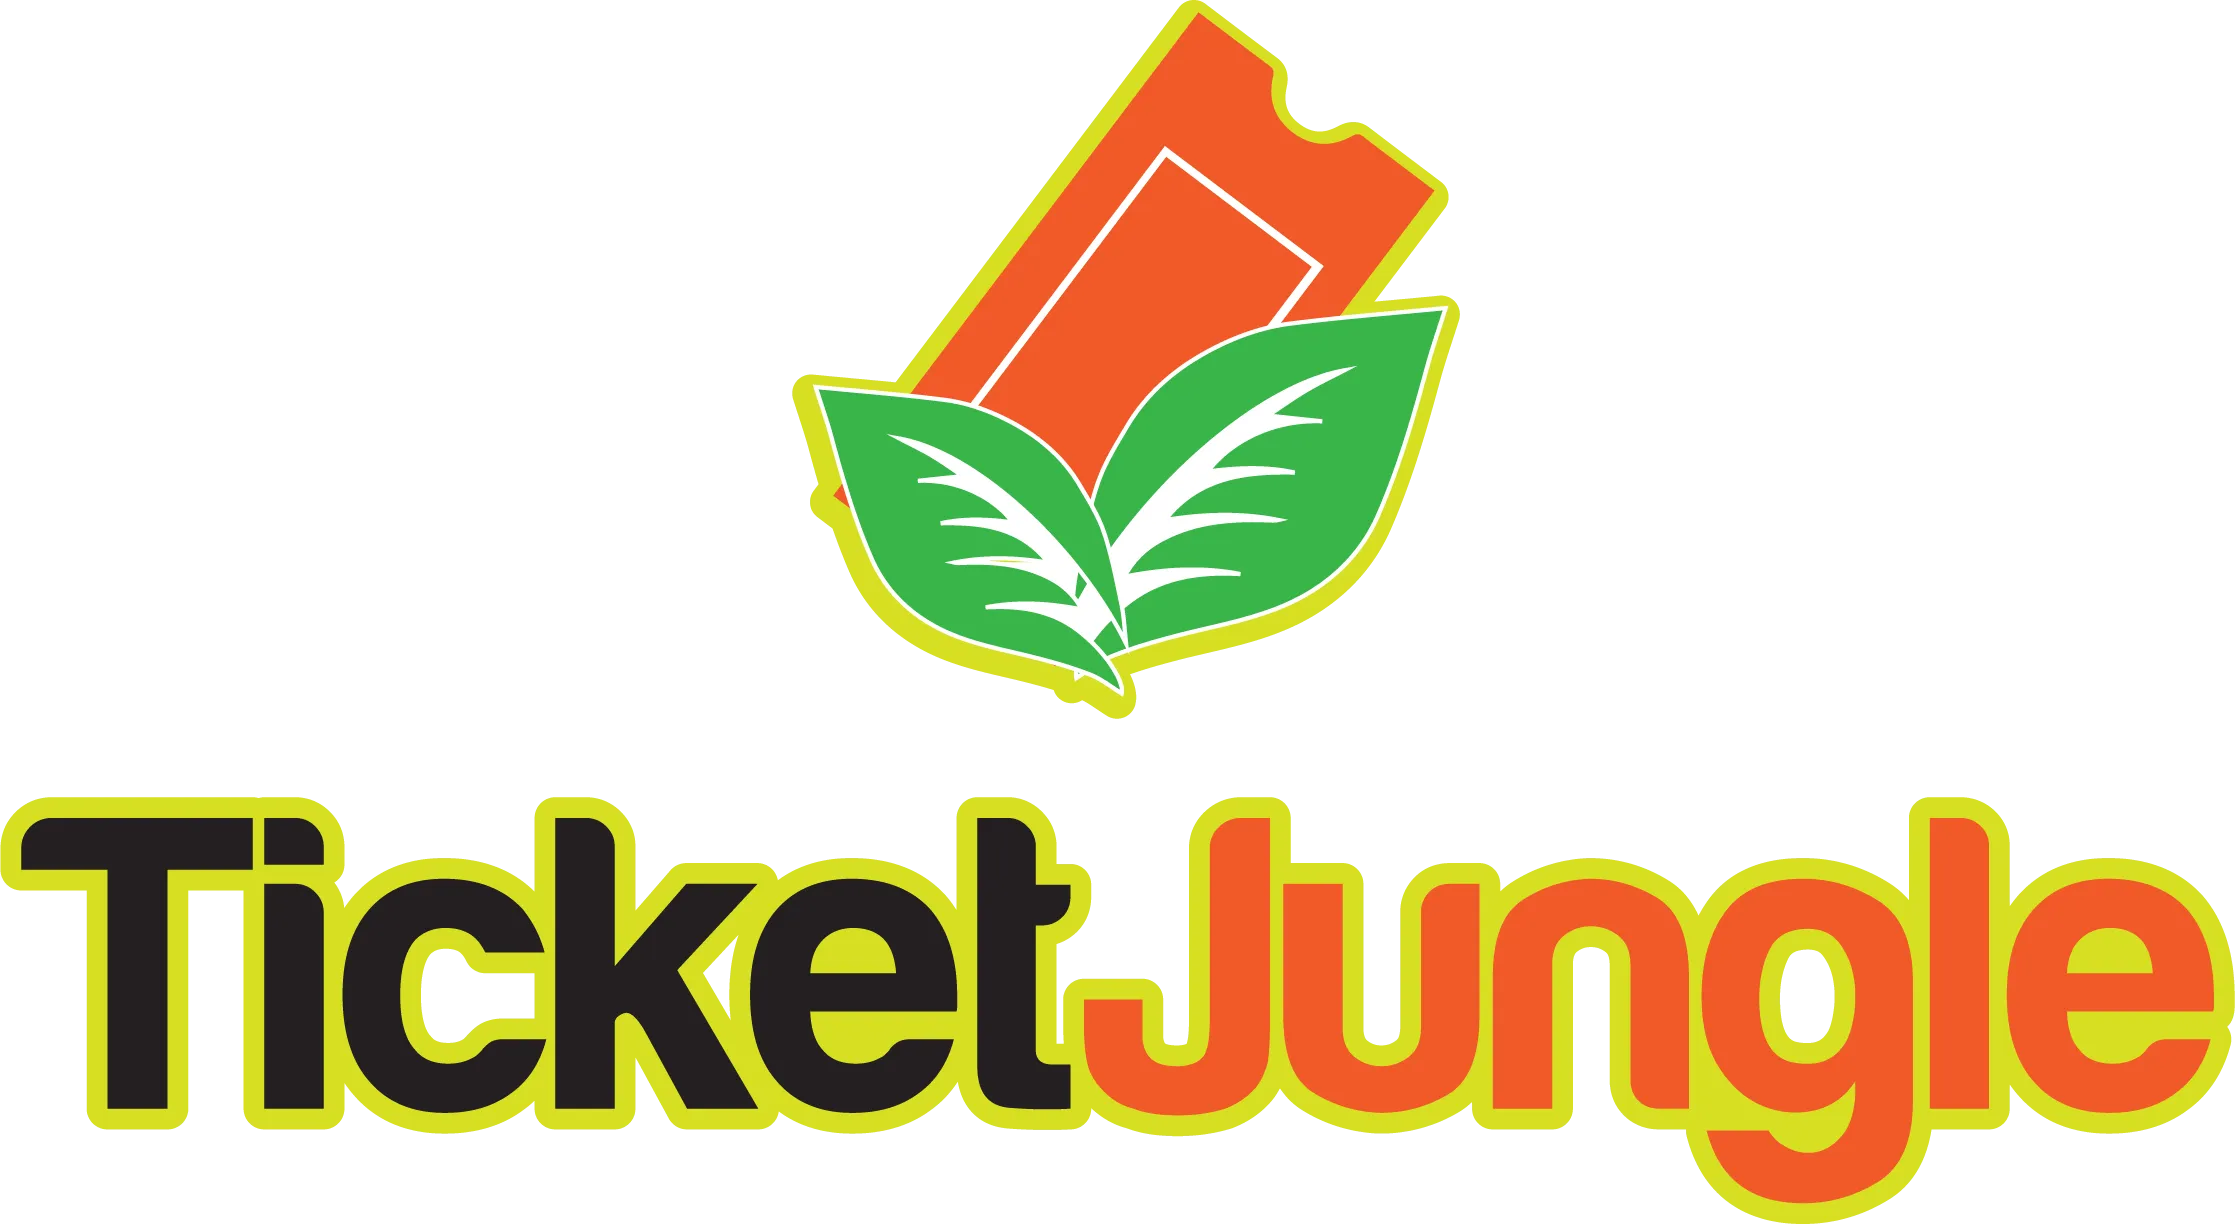 TicketJungle.com